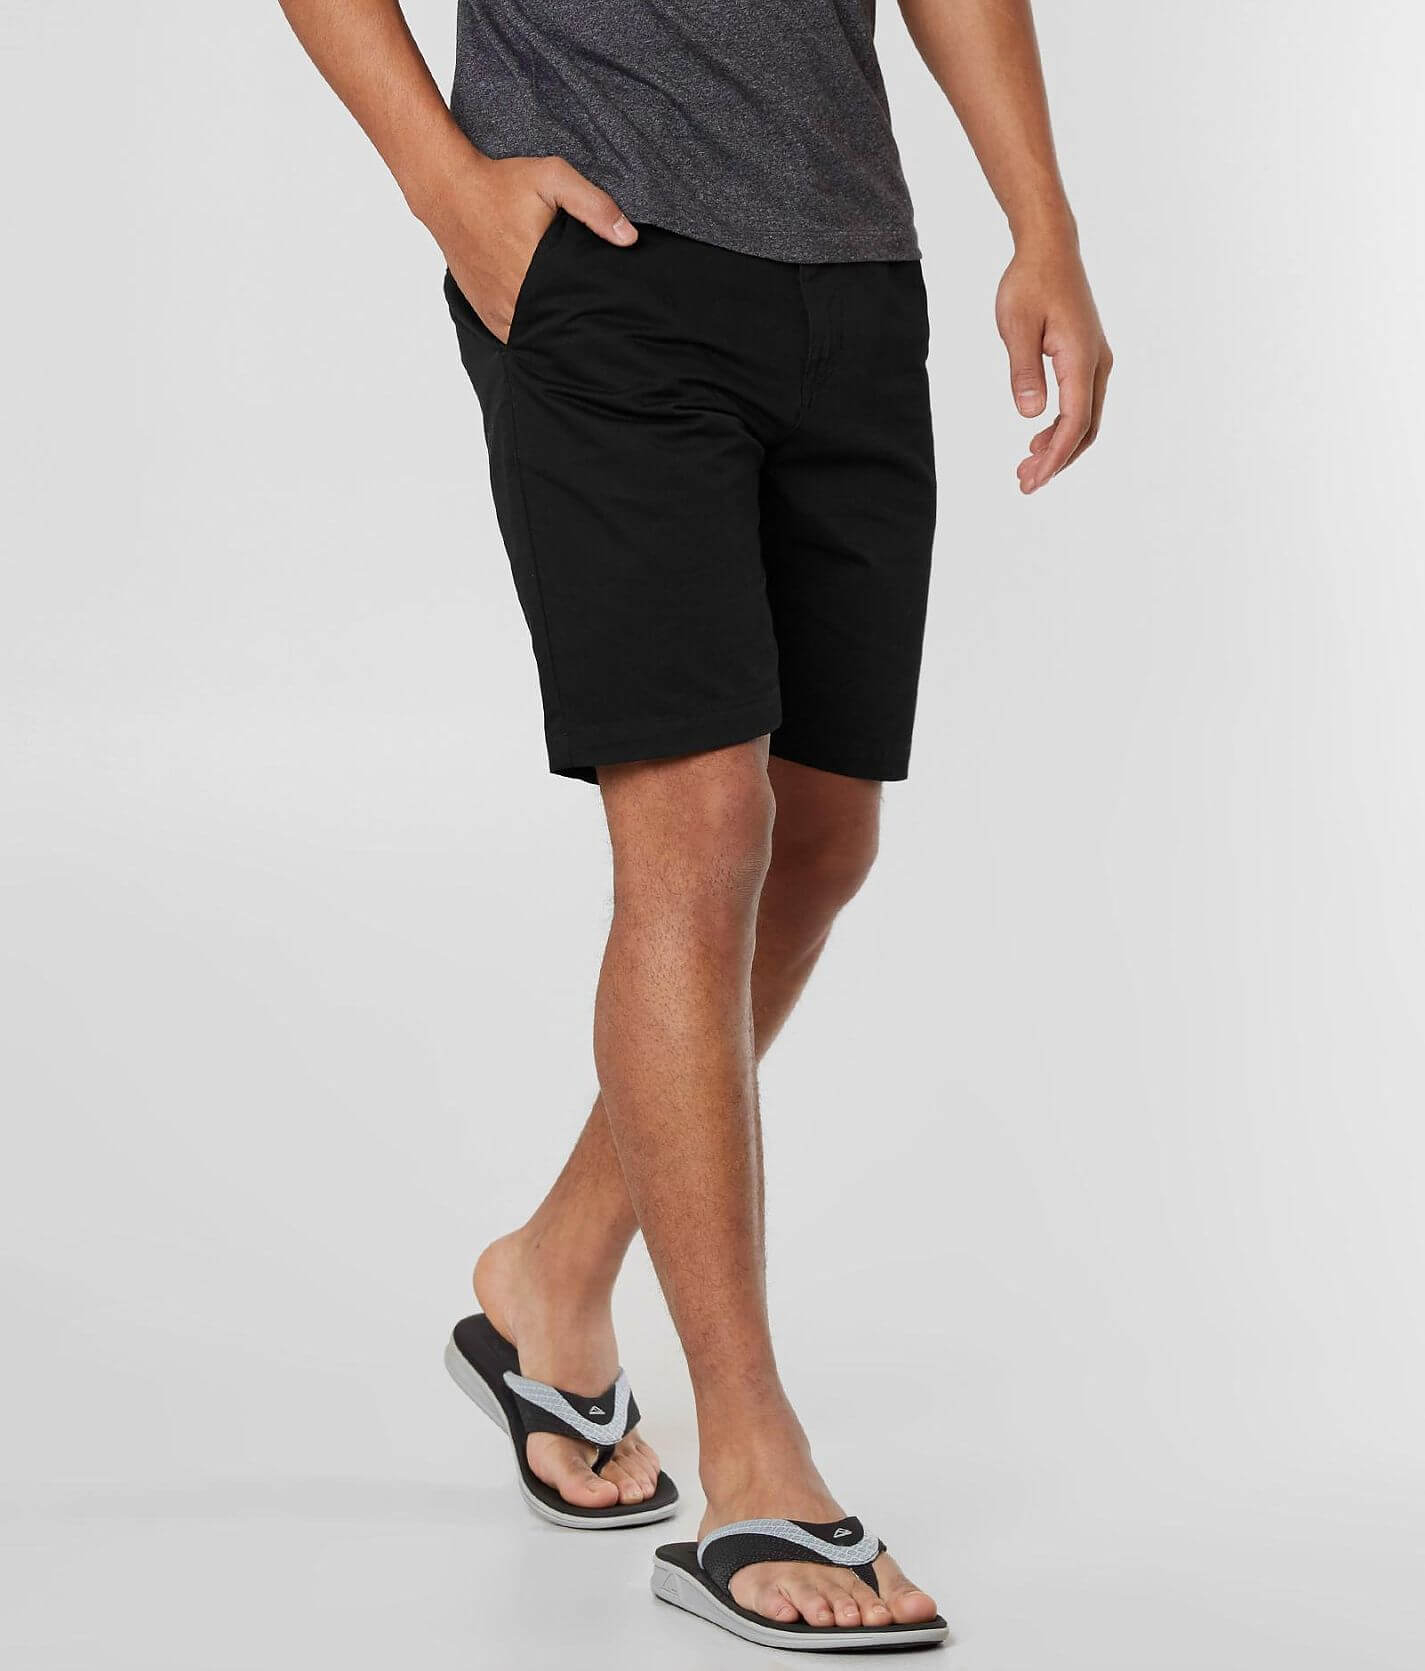 Volcom Drifter Short - Men's Shorts in Black | Buckle